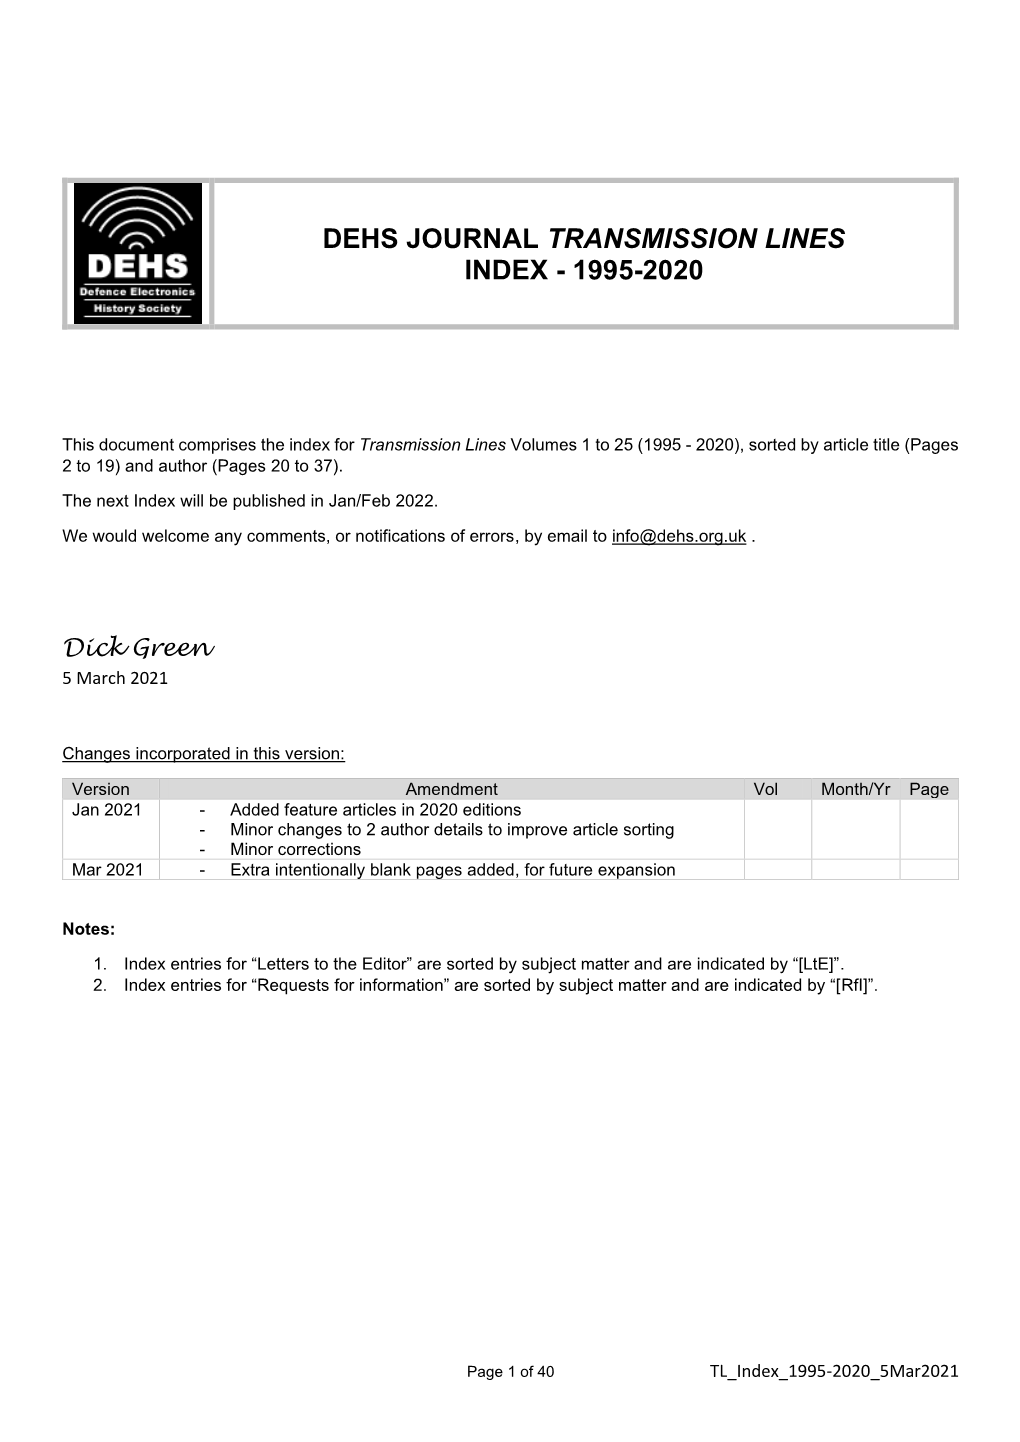 Dehs Journal Transmission Lines Index - 1995-2020